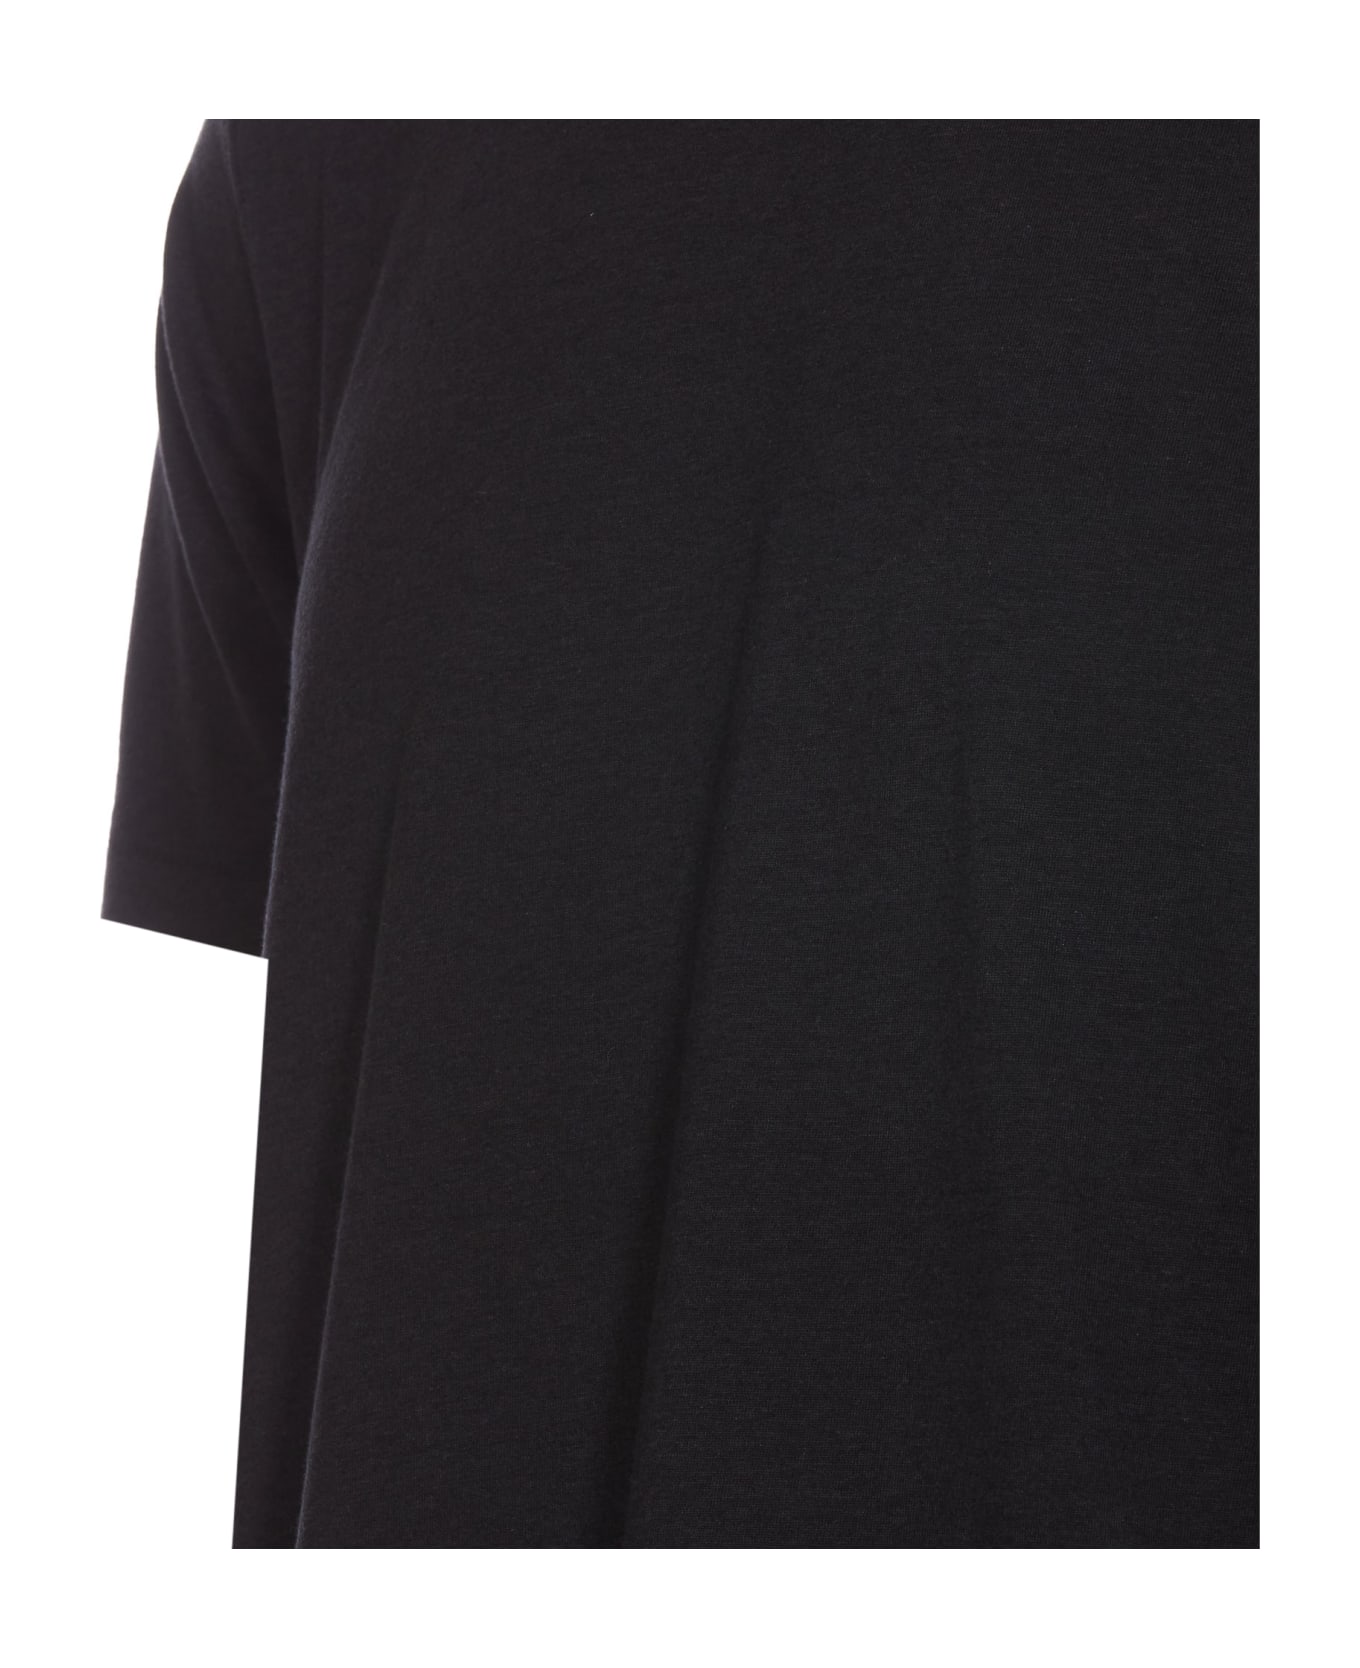 Tom Ford T-shirt - Black